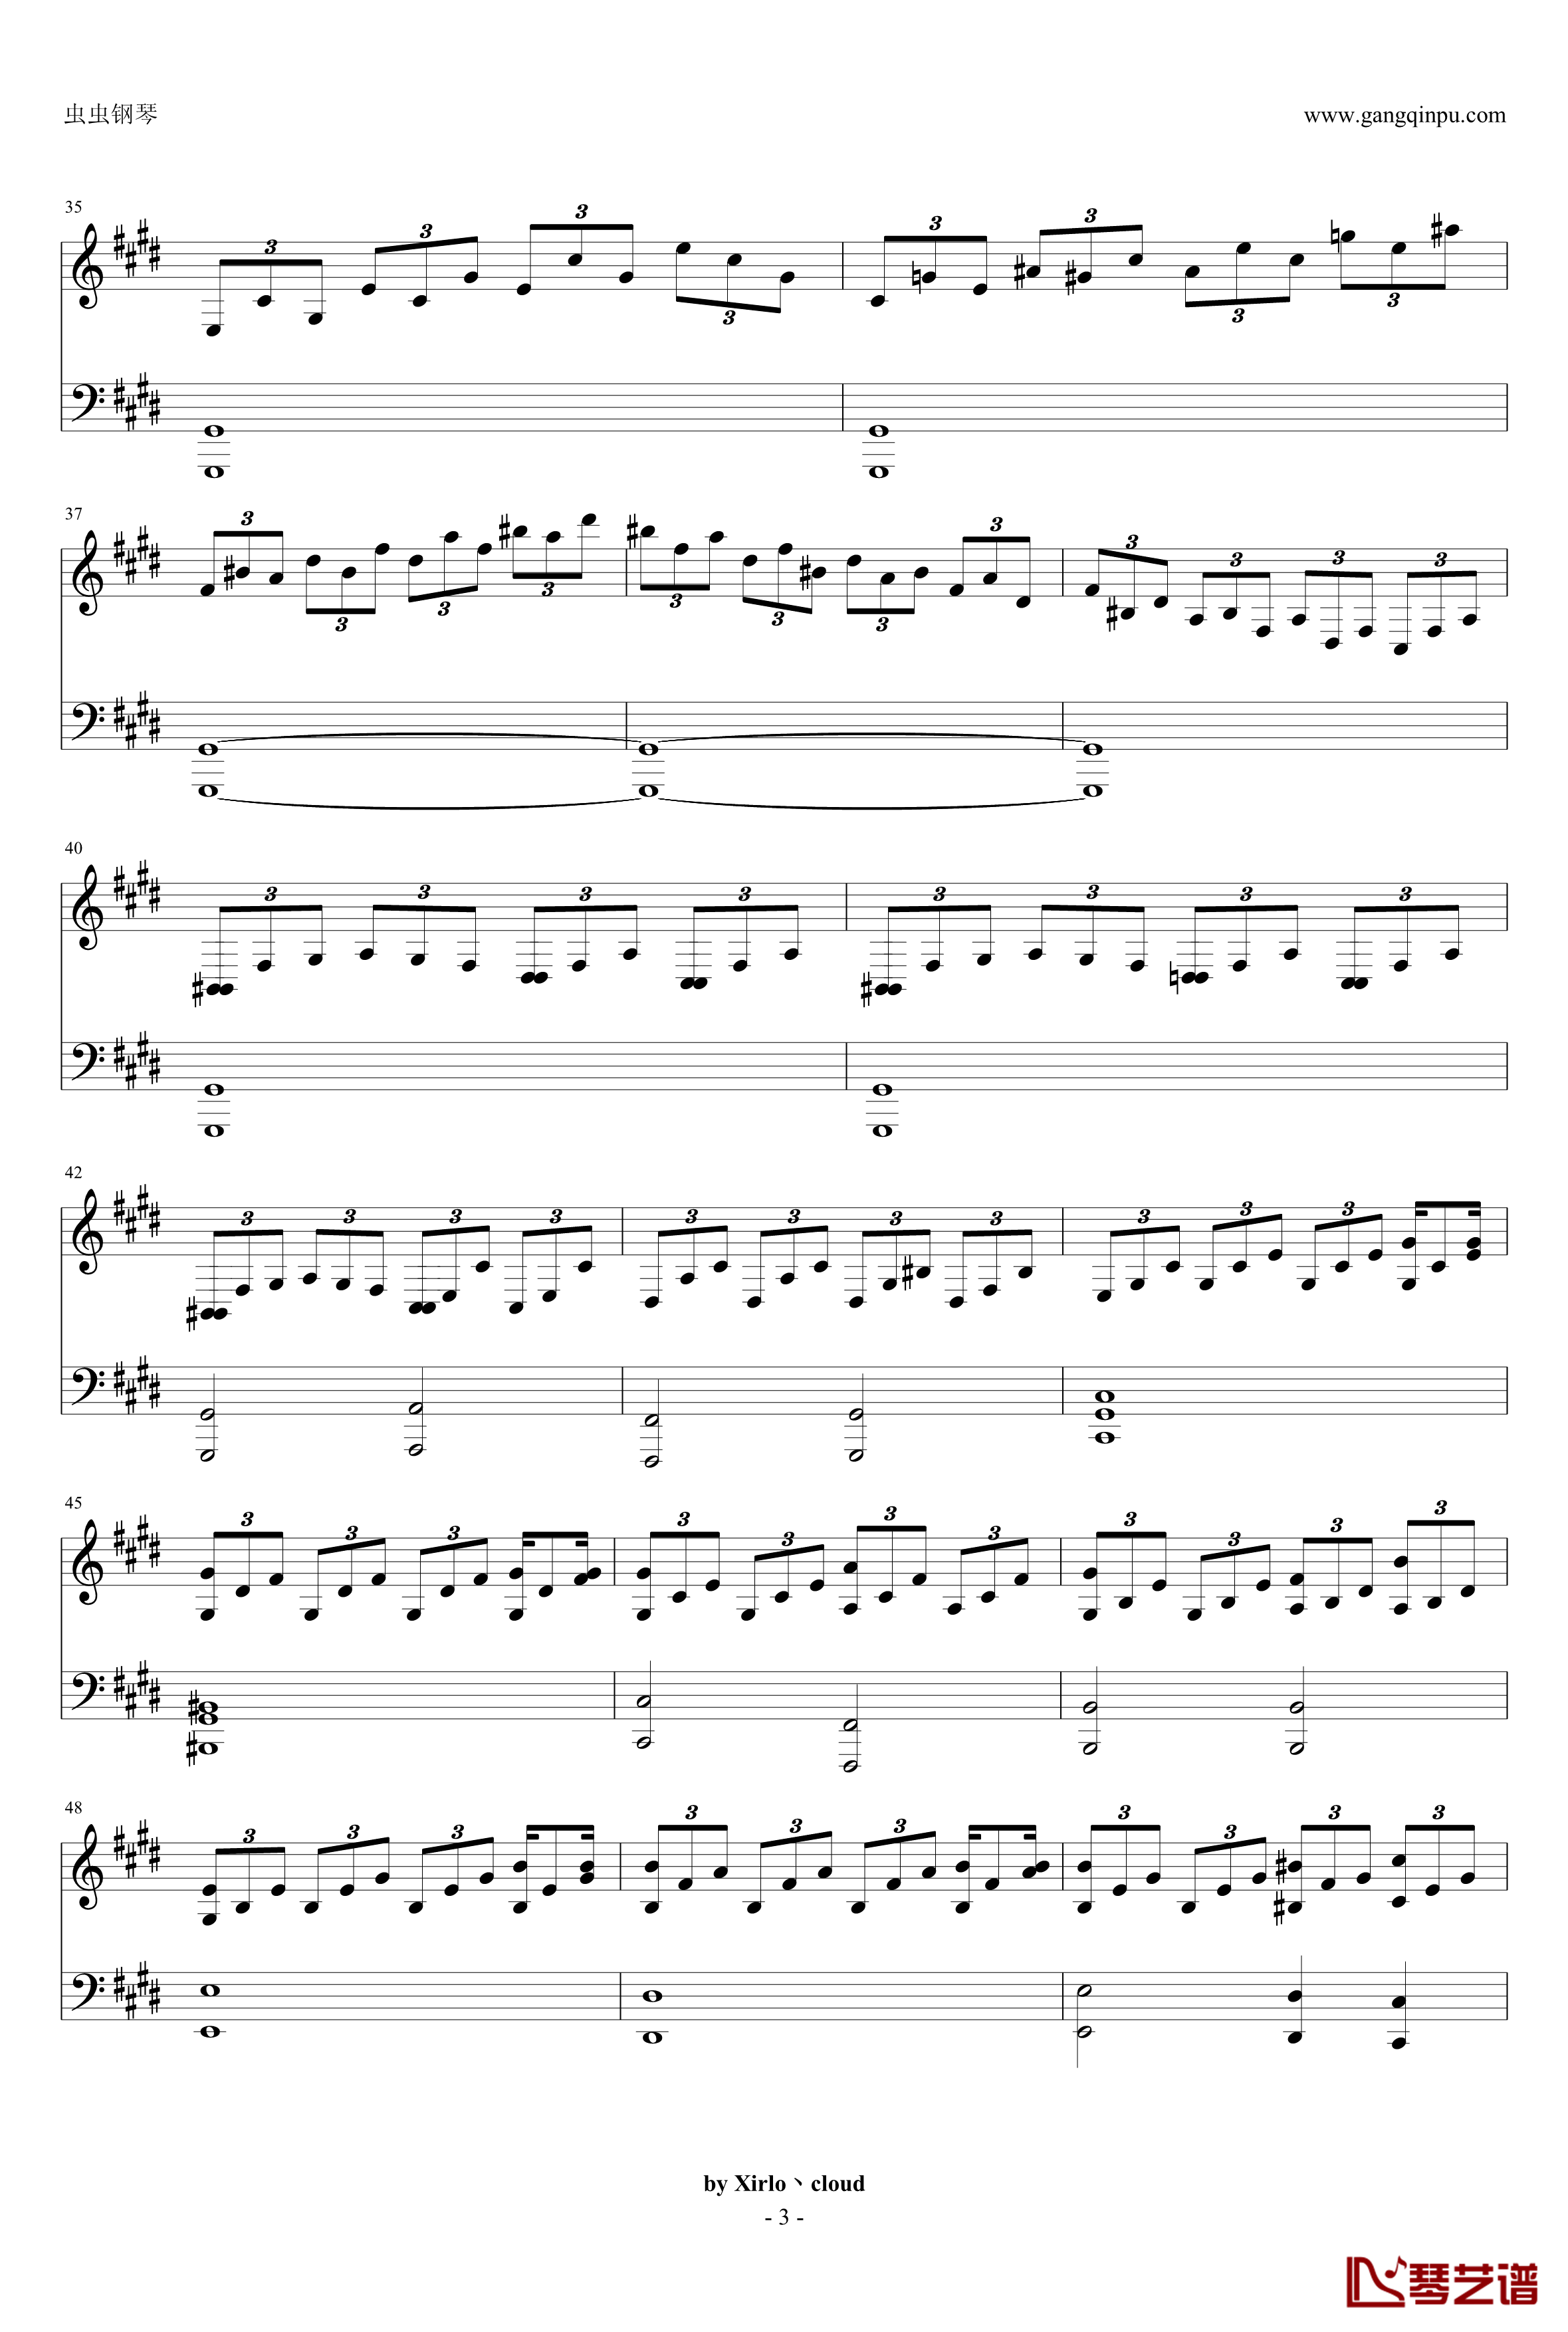 月光奏鸣曲钢琴谱-改编版-贝多芬-beethoven3